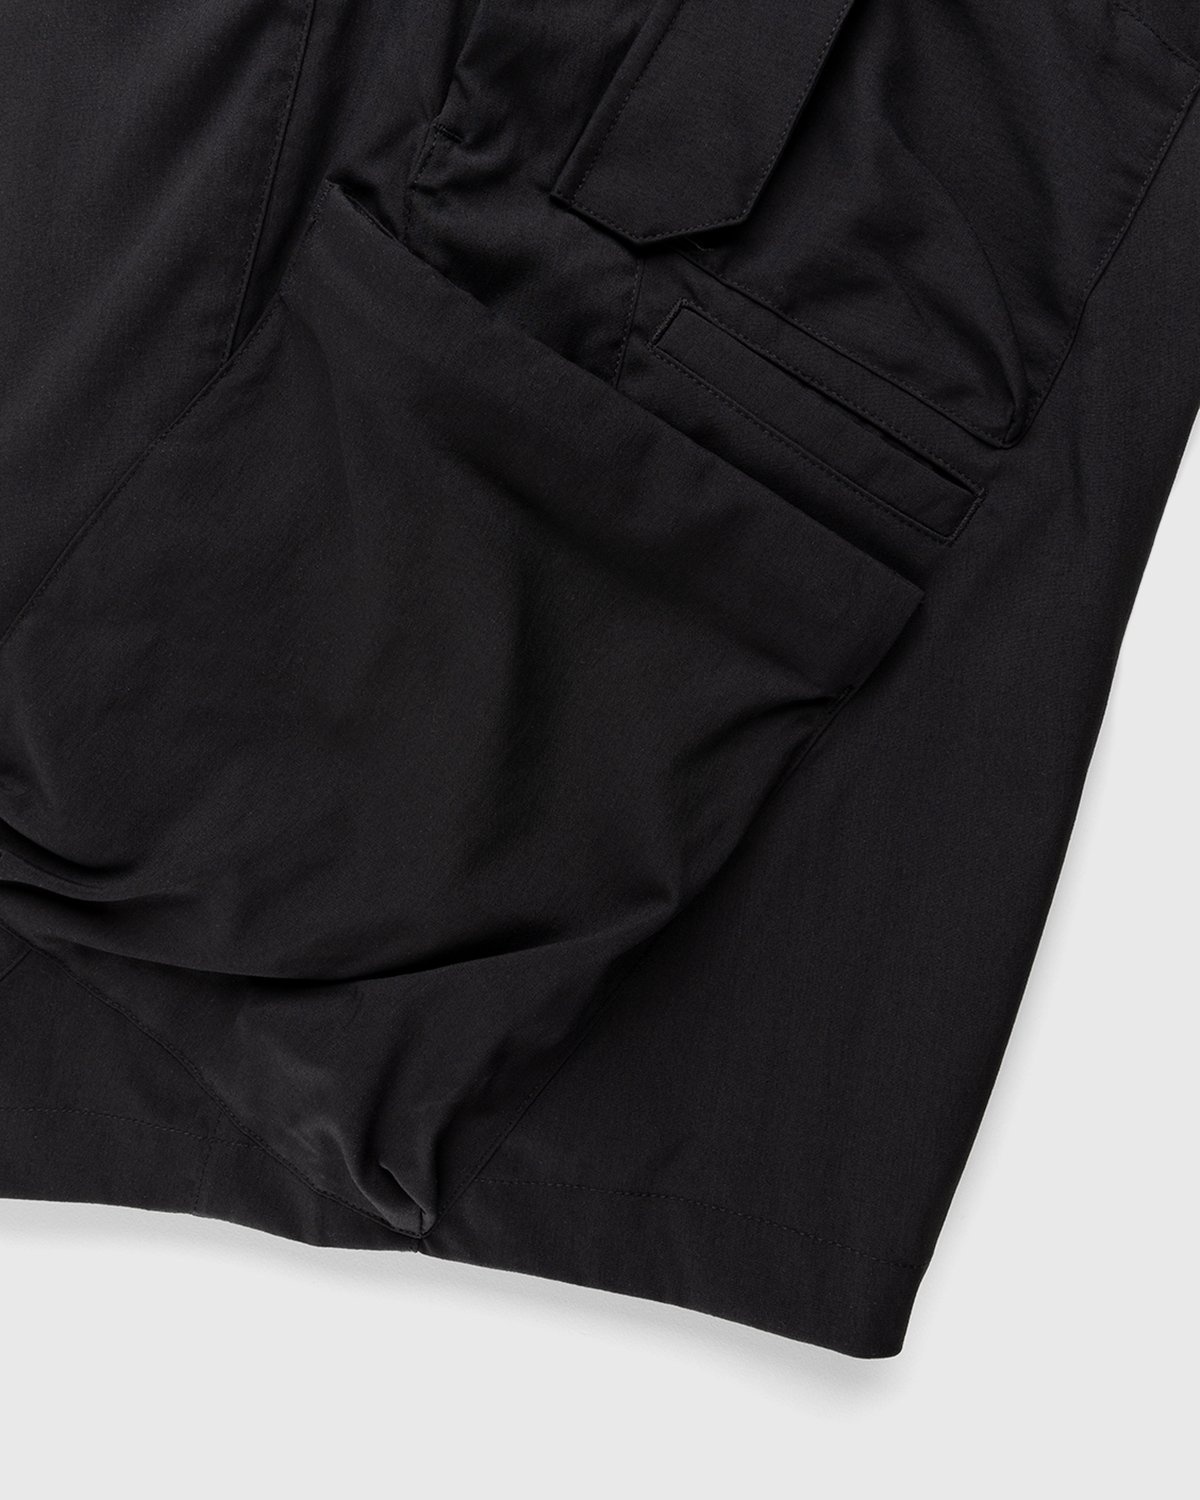 ACRONYM – SP29-M Cargo Shorts Black - Shorts - Black - Image 6